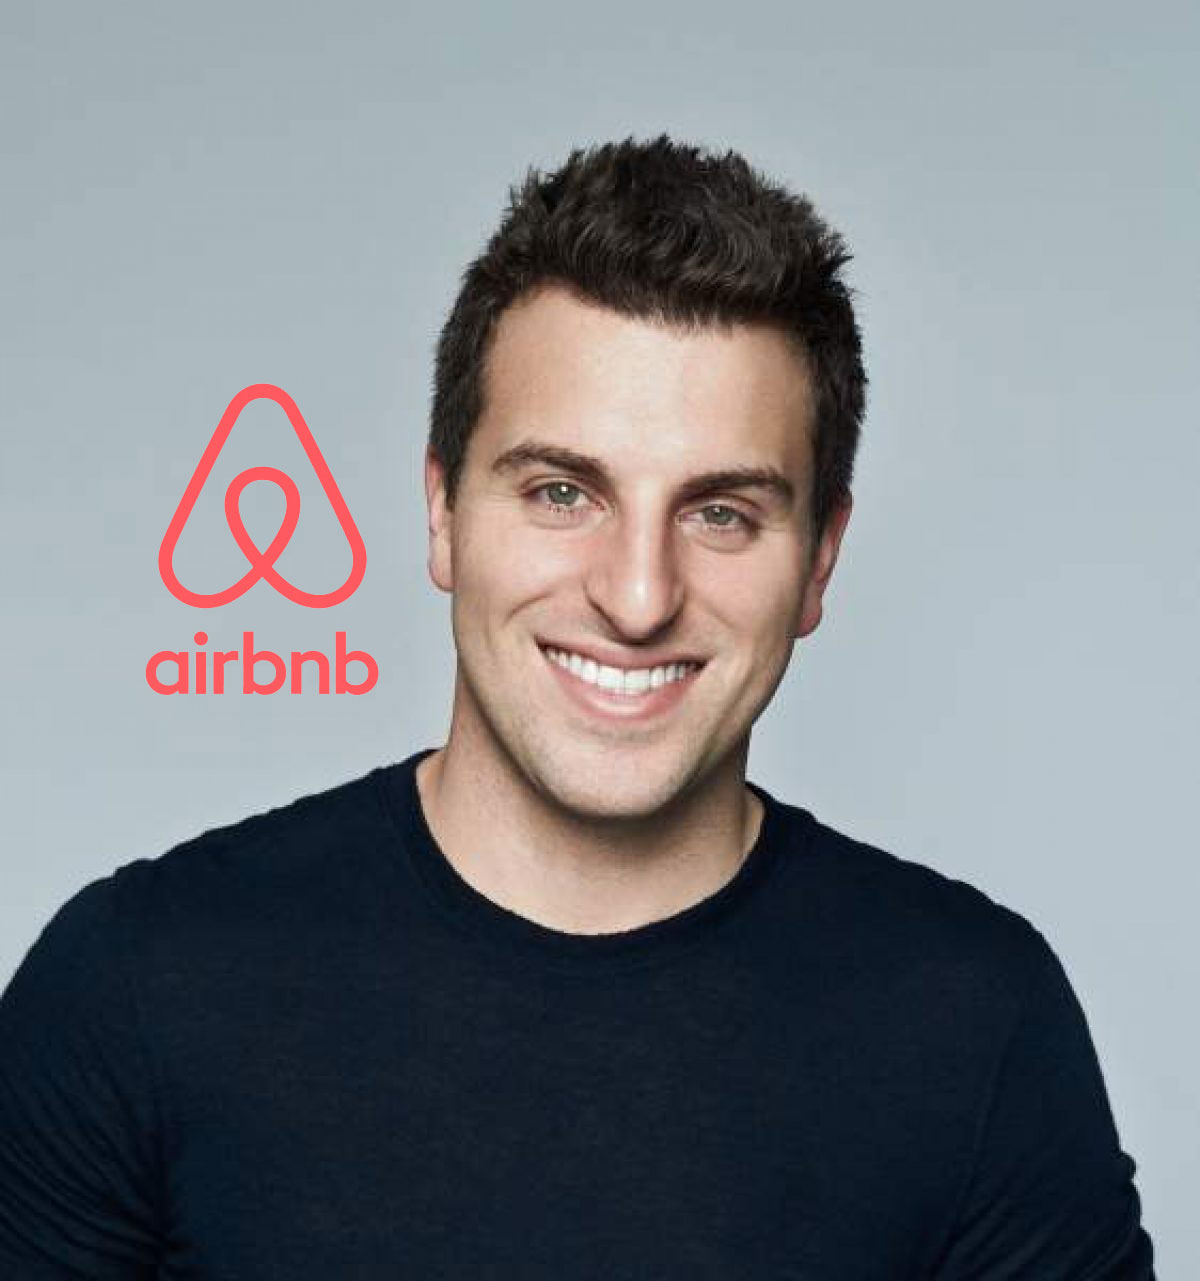 براين تشيسكي مؤسس Airbnb